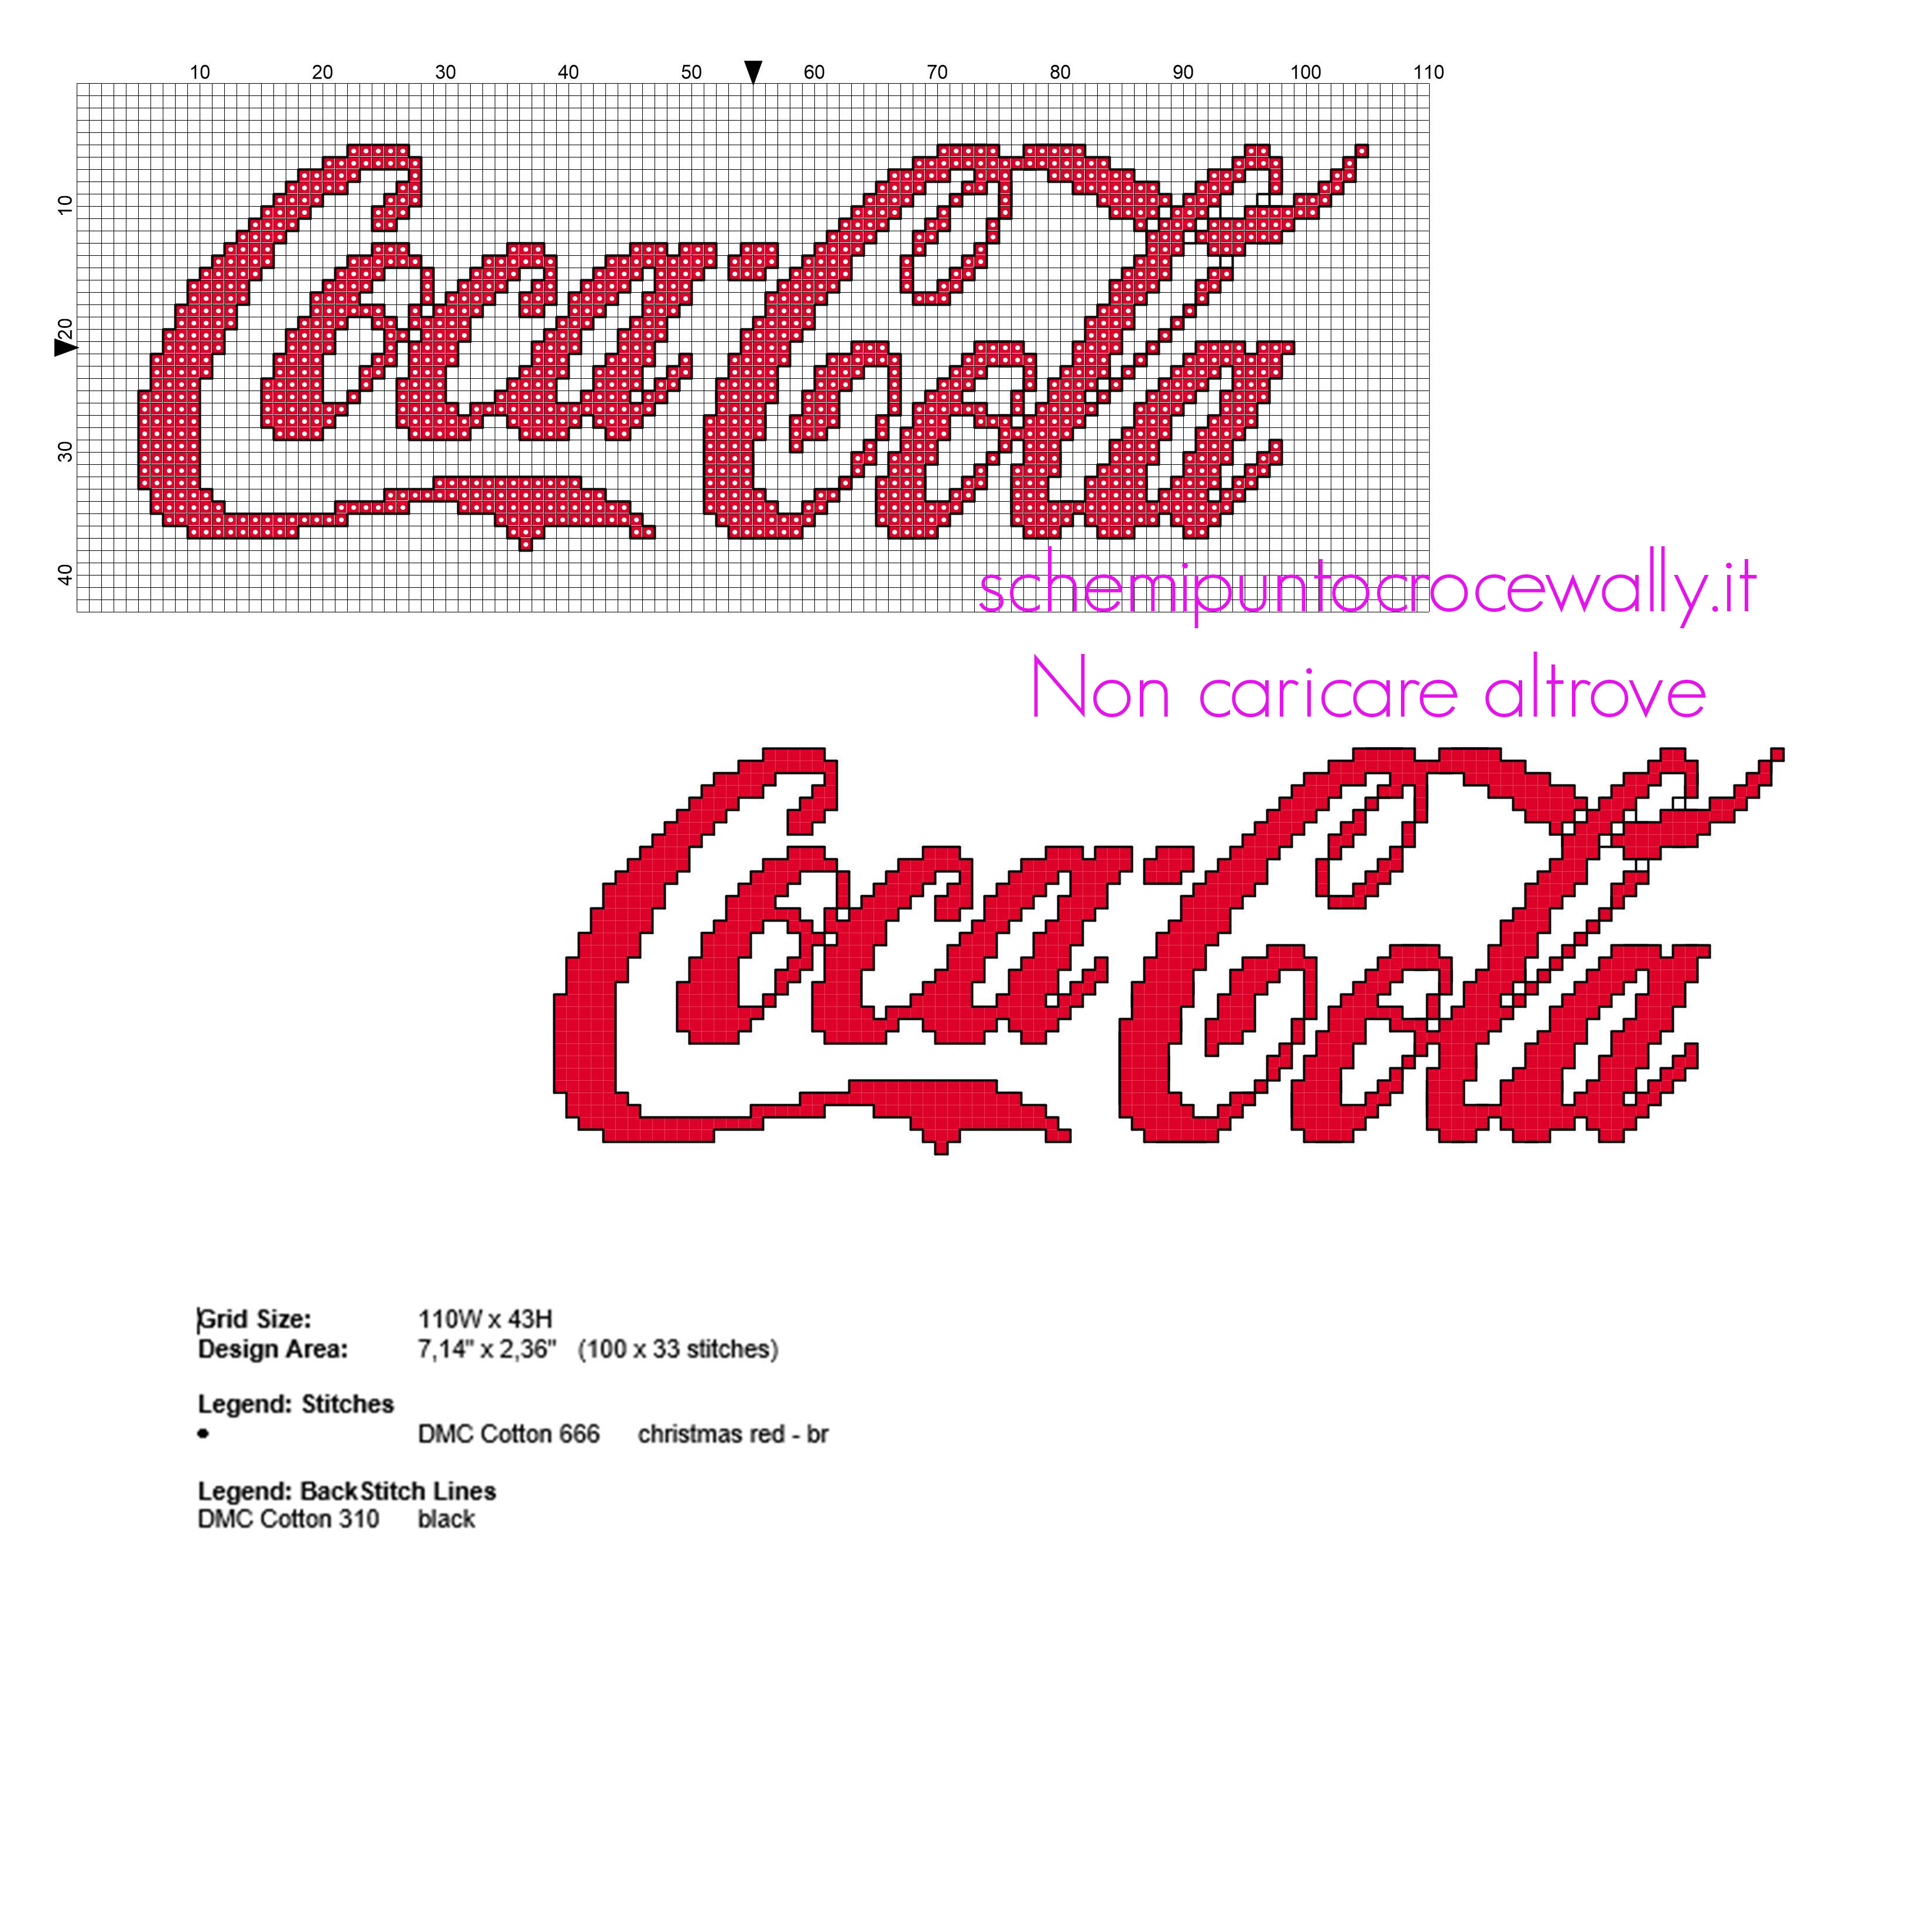 Logo scritta Cocacola Coca Cola schema punto croce gratis